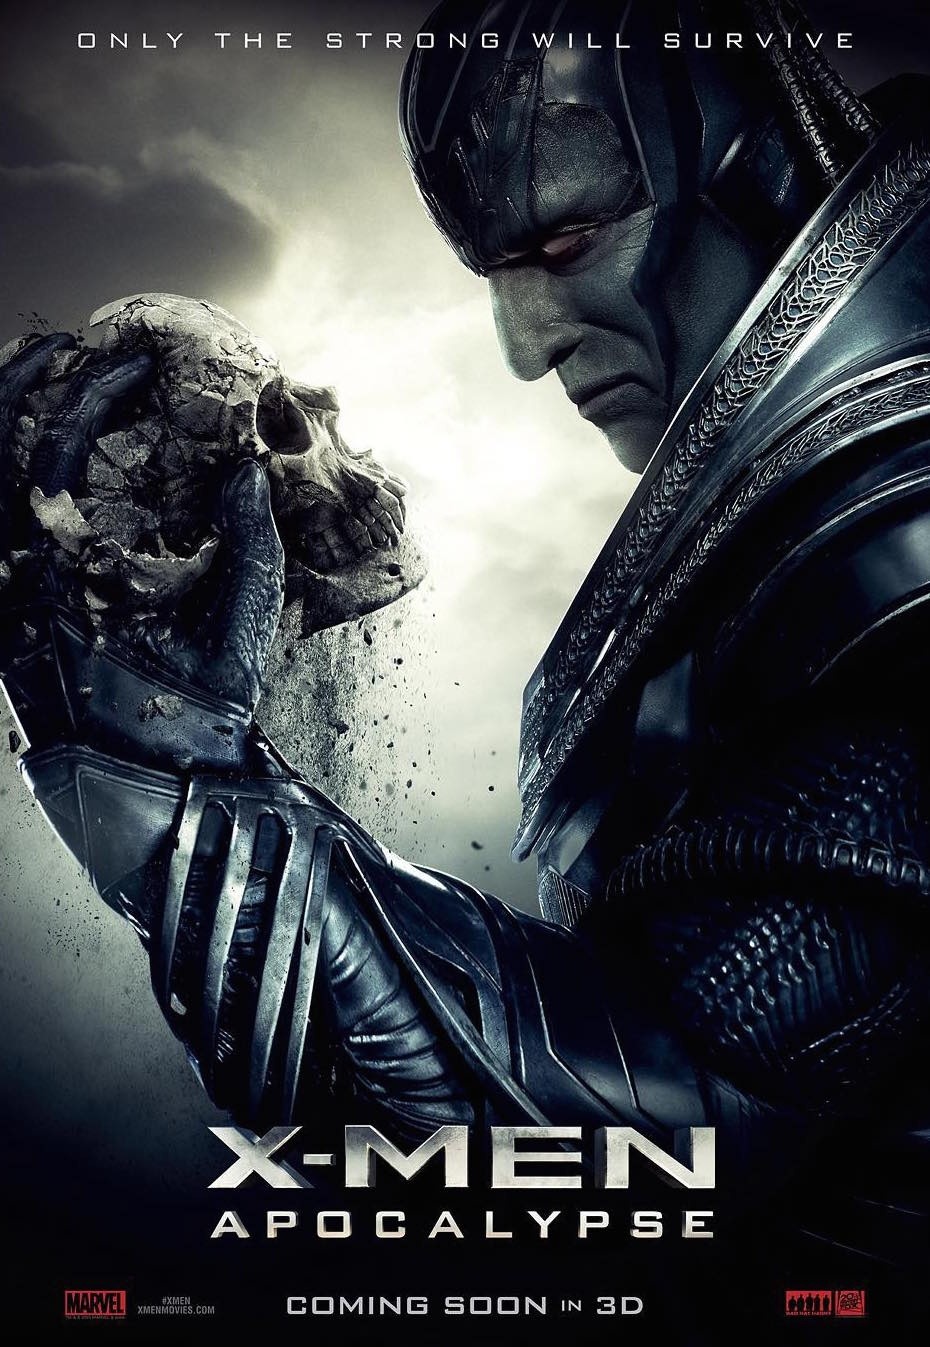 Das offizielle Poster zu X-Men: Apocalypse mit Oscar Isaac als Bösewicht.